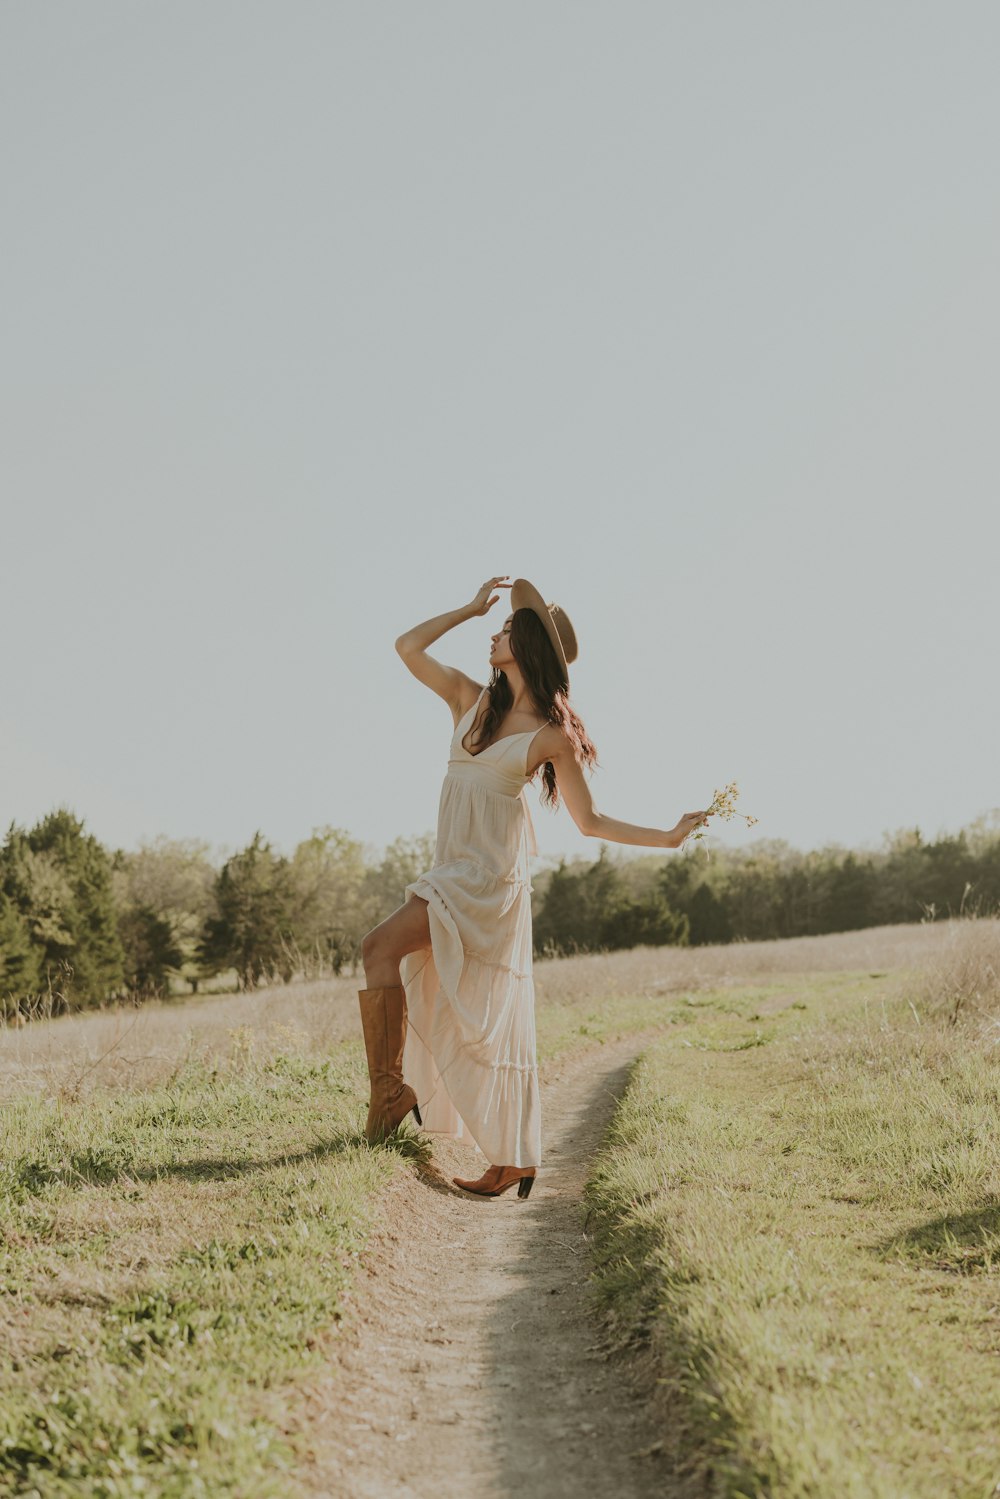 Eine Frau in weißem Kleid und Cowboyhut tanzt auf einem Feldweg